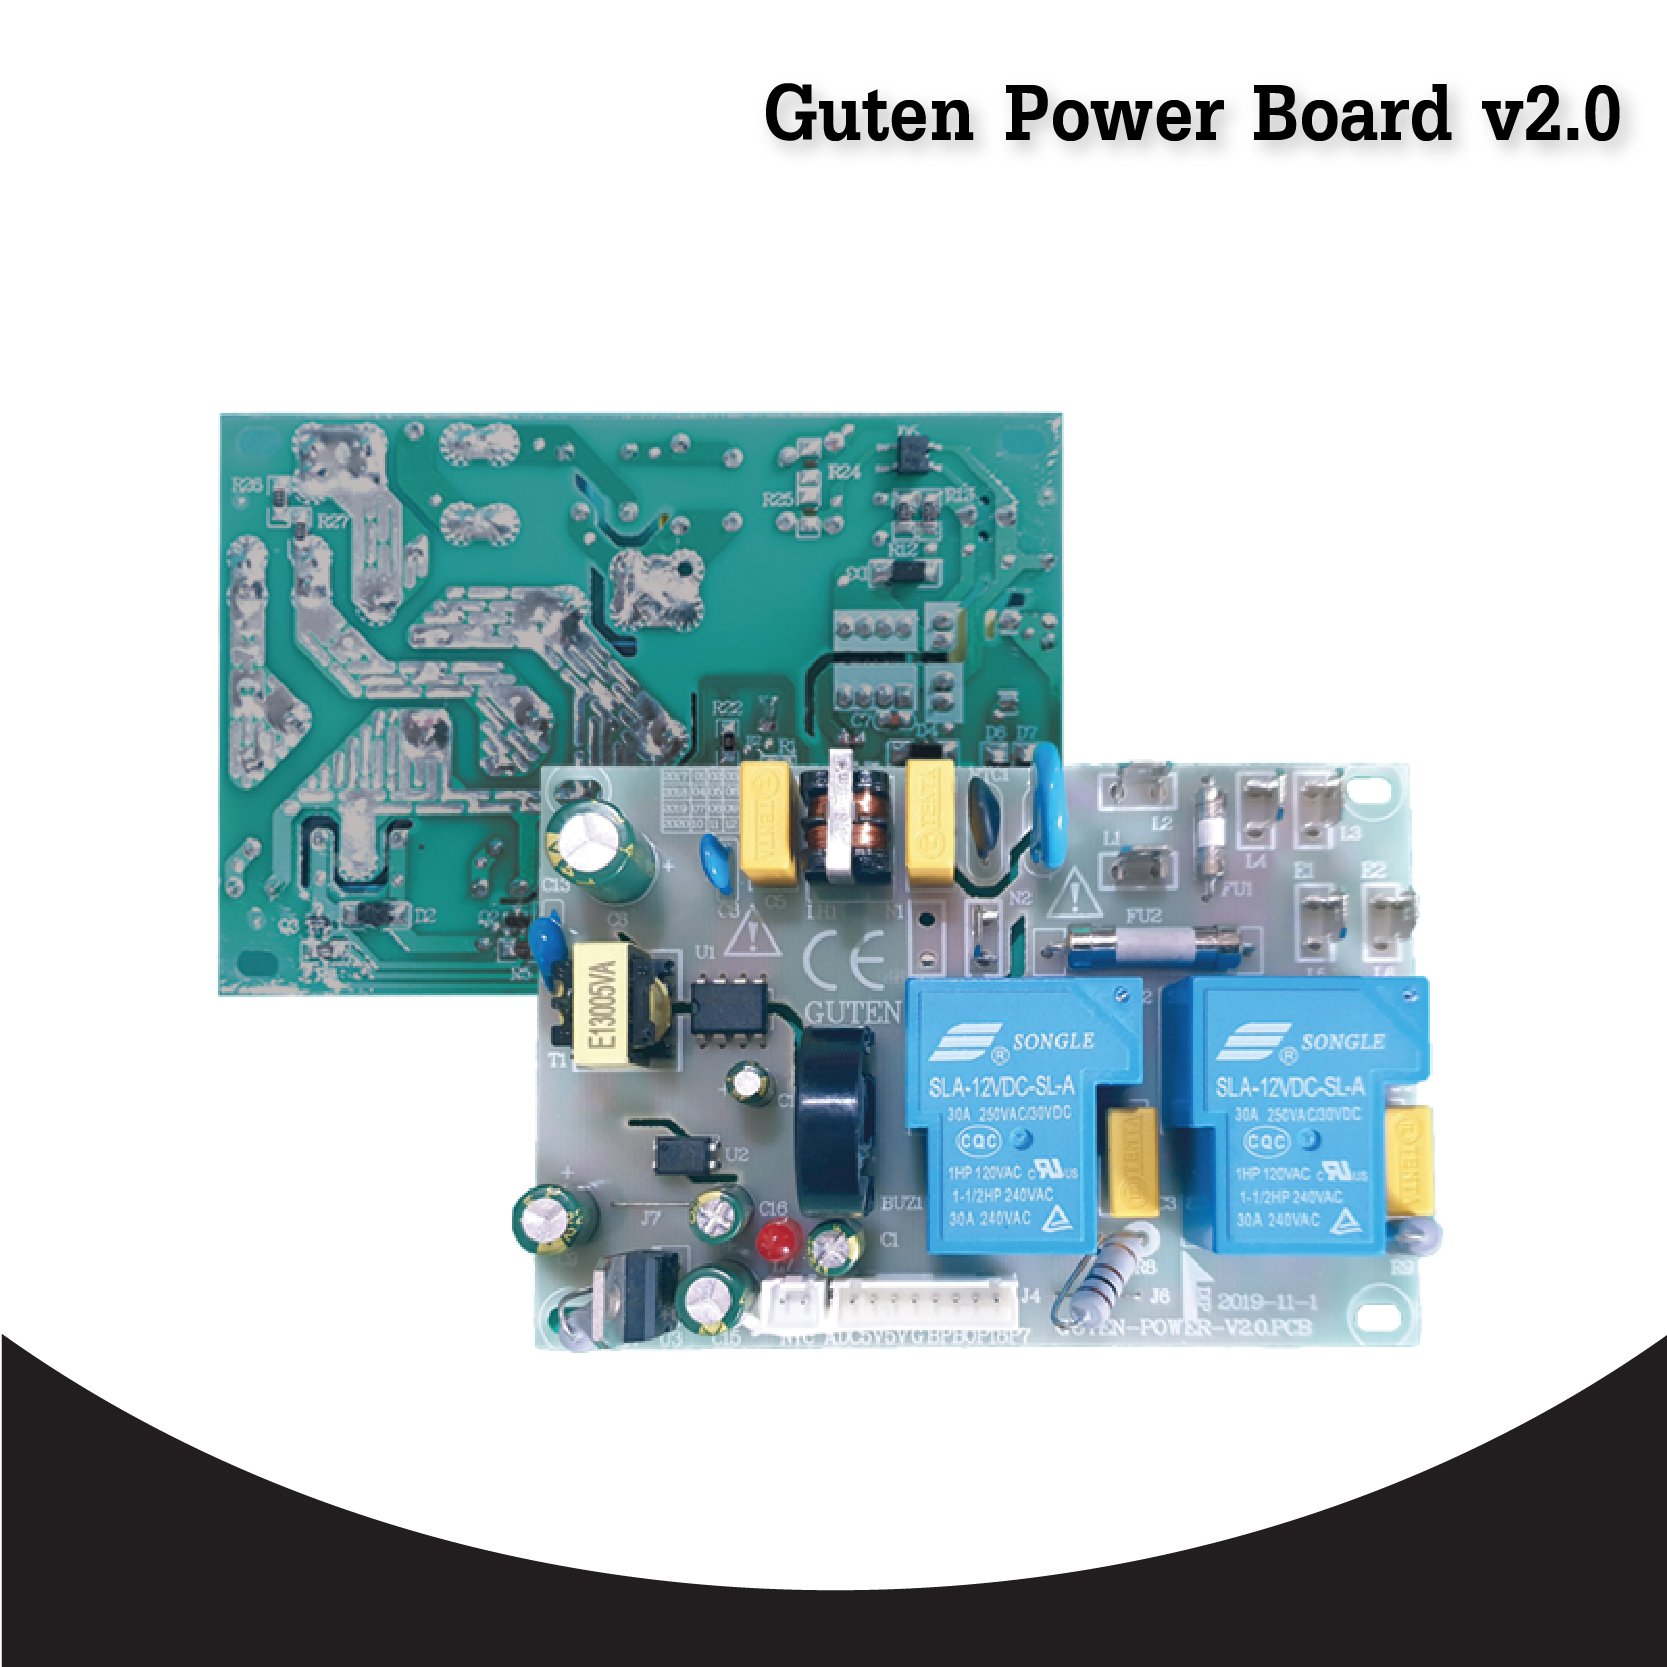 Guten power board 2.0